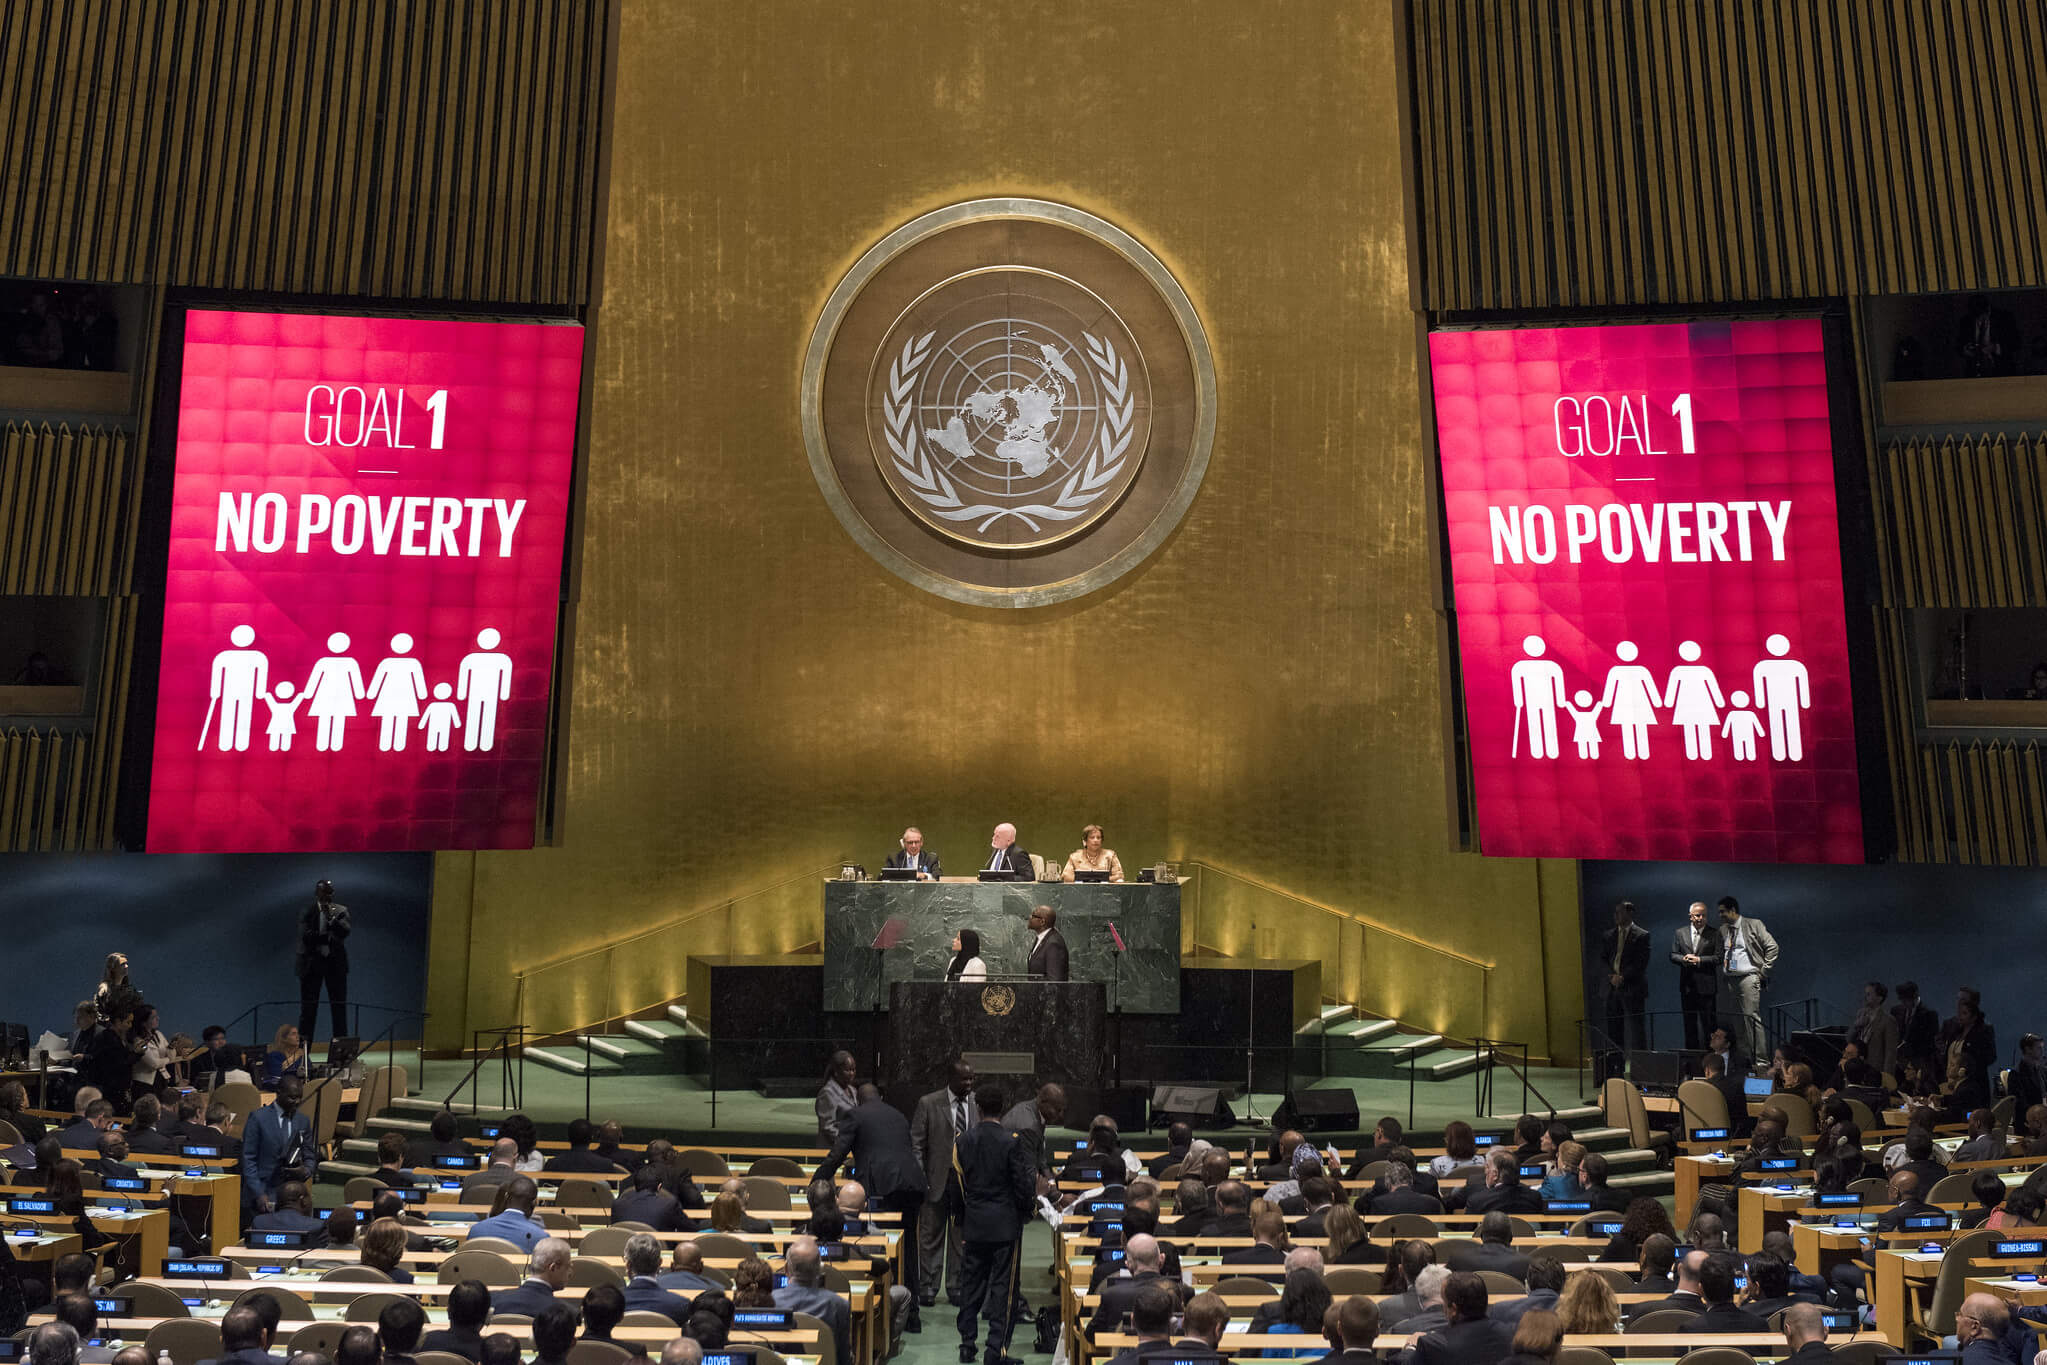 Aandacht voor de Sustainable Development Goals (SDGs) tijdens de algemene vergadering van de VN in New York in 2016. UN Photo